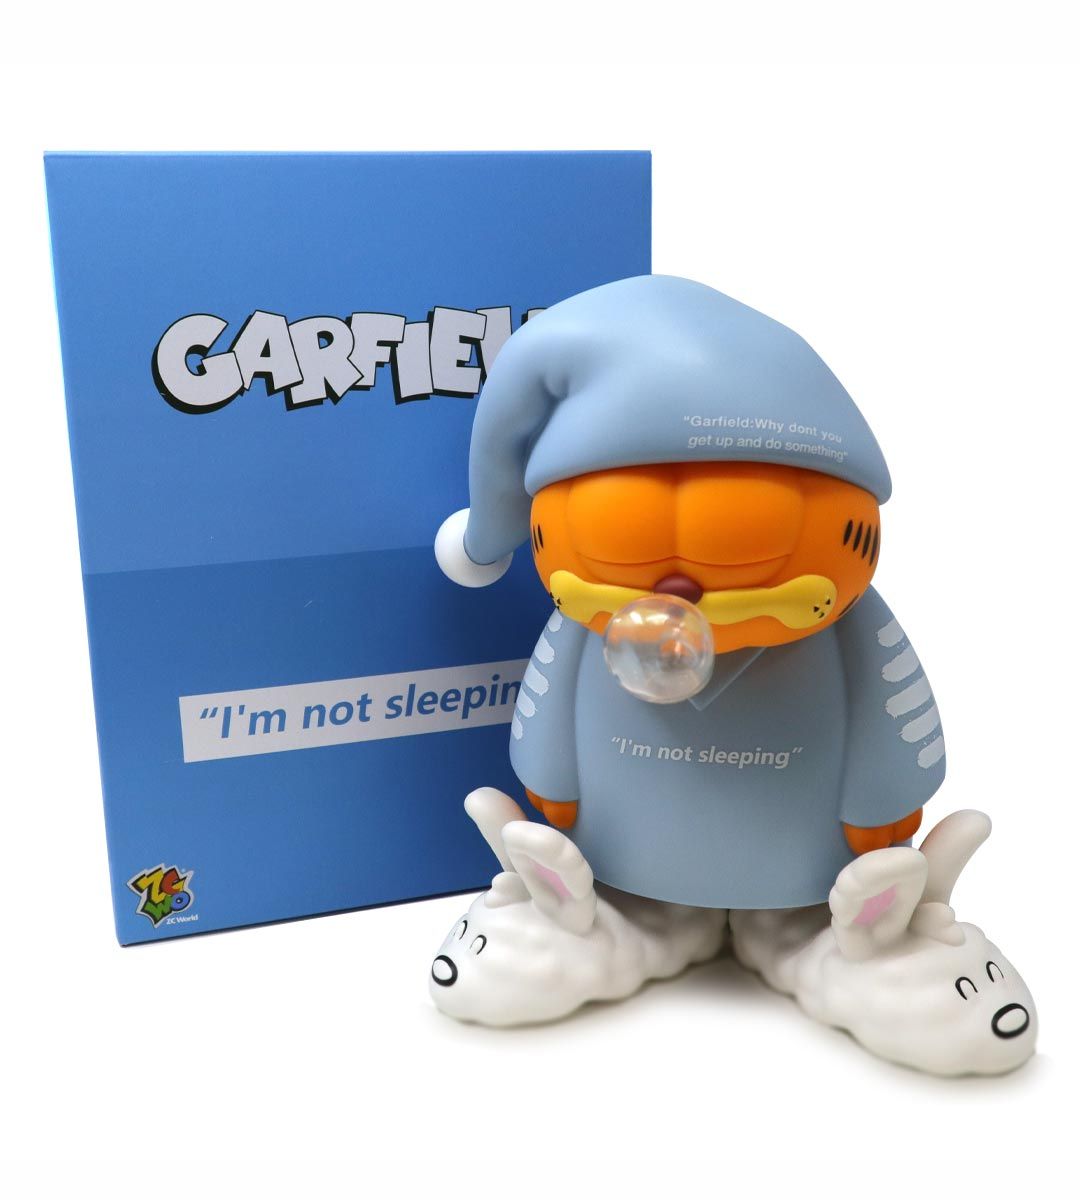 Garfield "No estoy durmiendo"